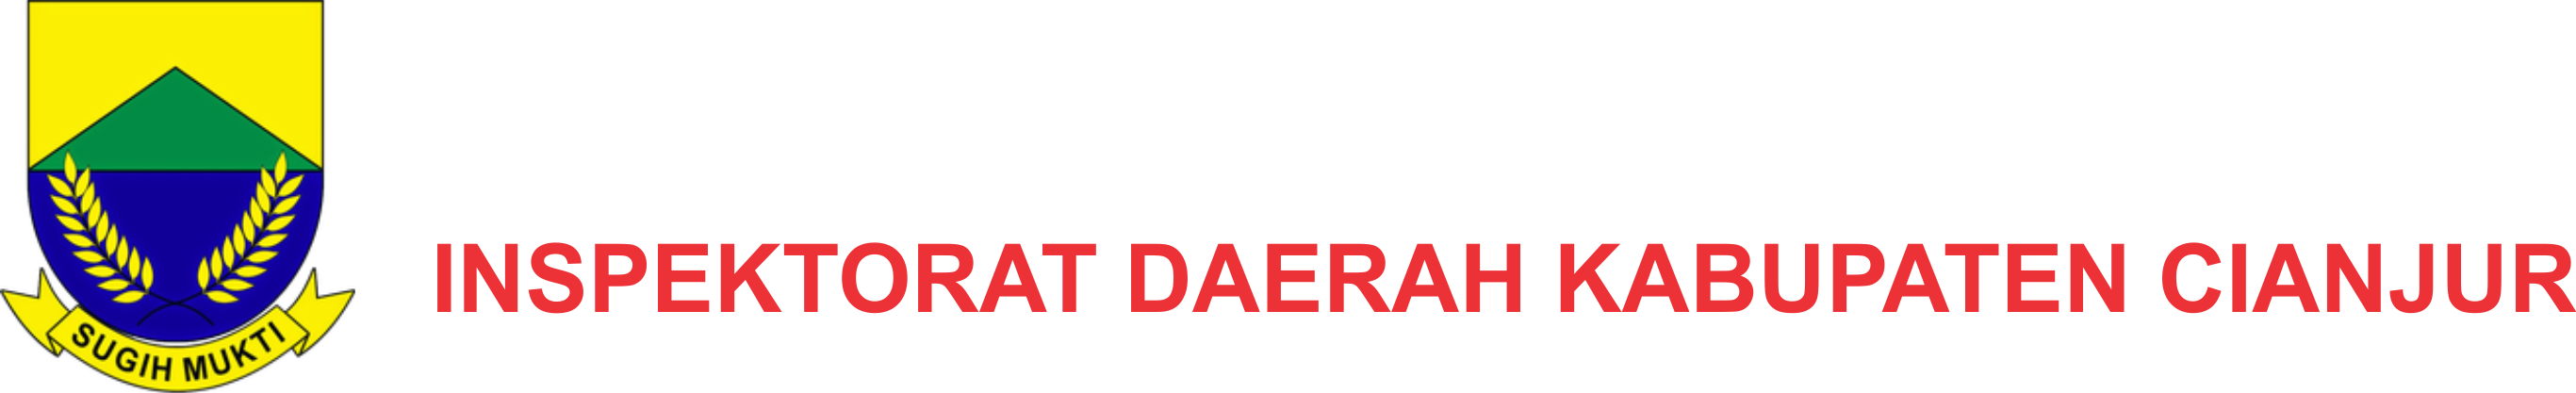 Cropped Logo Sugih Png Inspektorat Daerah Kabupaten Cianjur